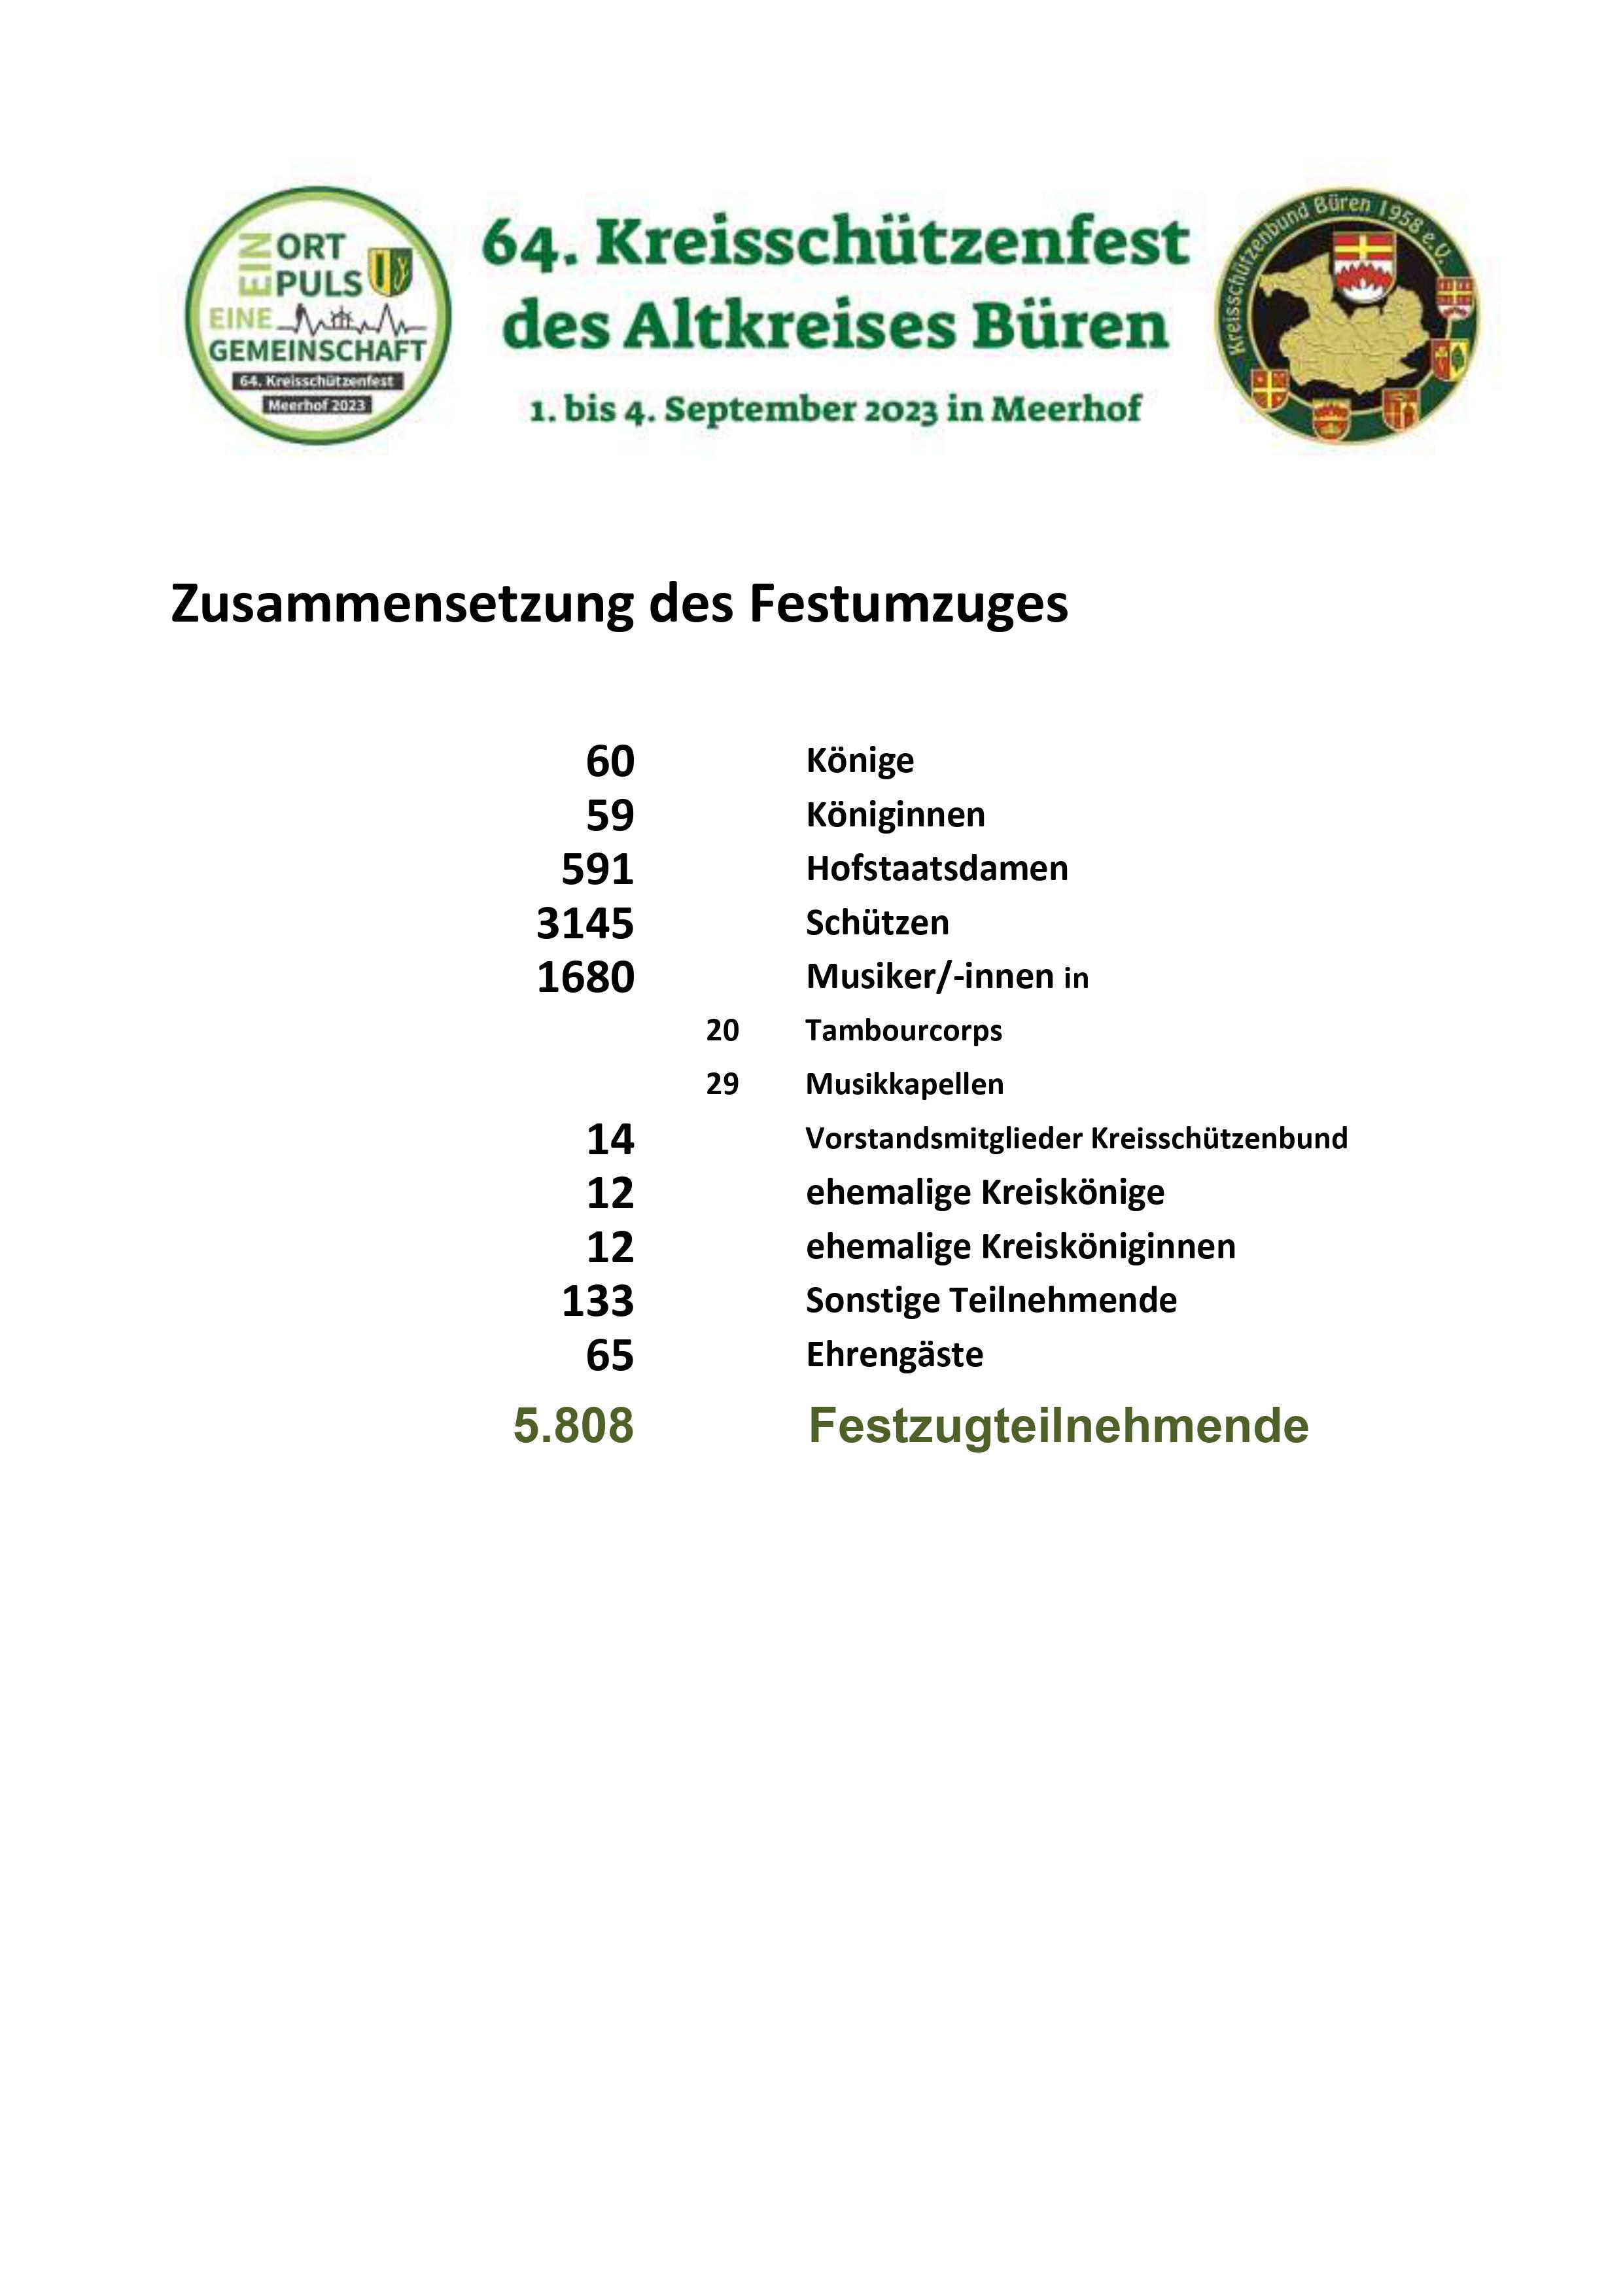 KSF 2023 Meerhof Vereine Anmeldung Teilnehmende 1 2